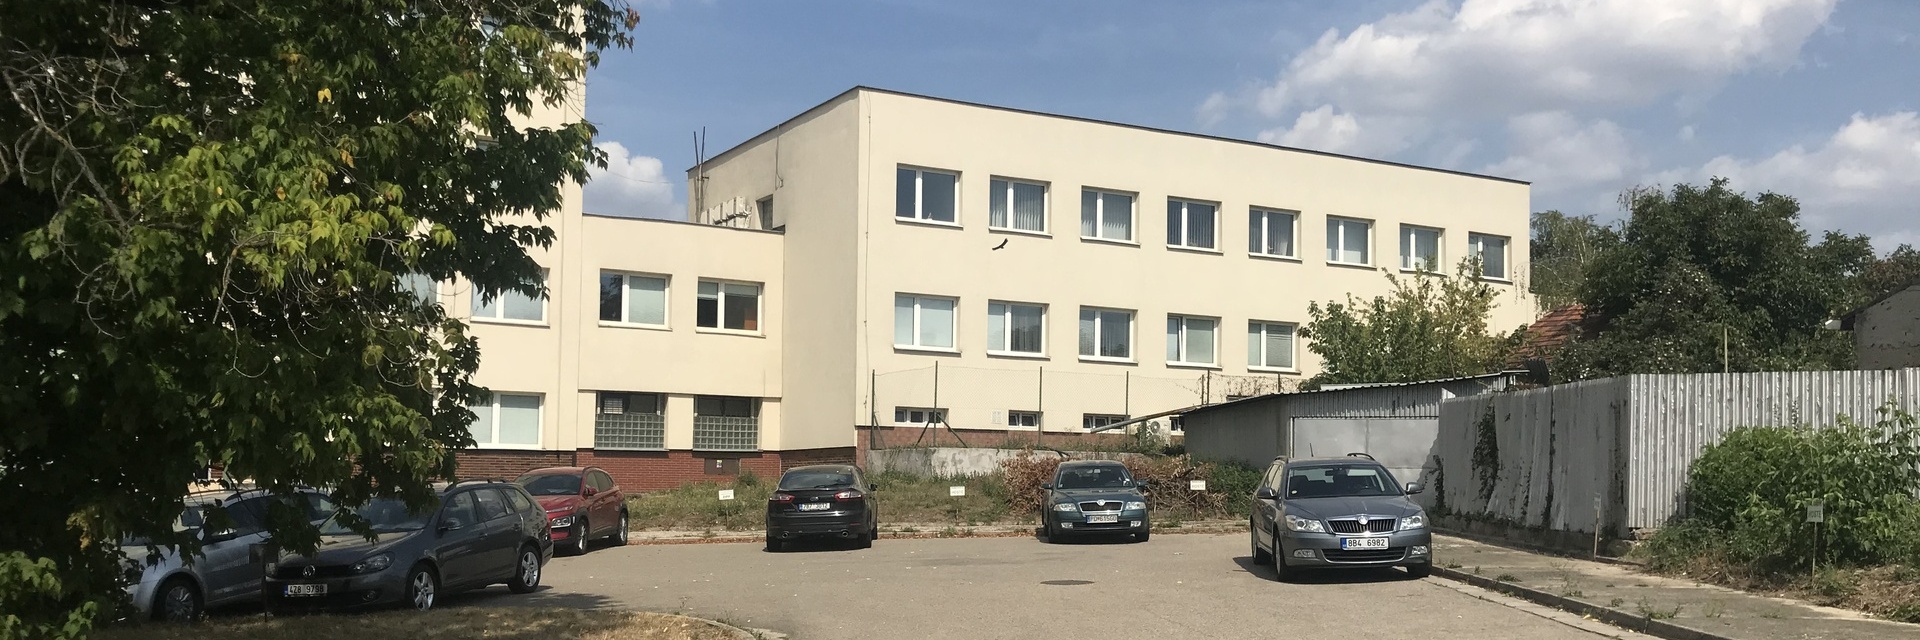 Pronájem kanceláře 26 m², ulice Kaštanová, Brno - Brněnské Ivanovice